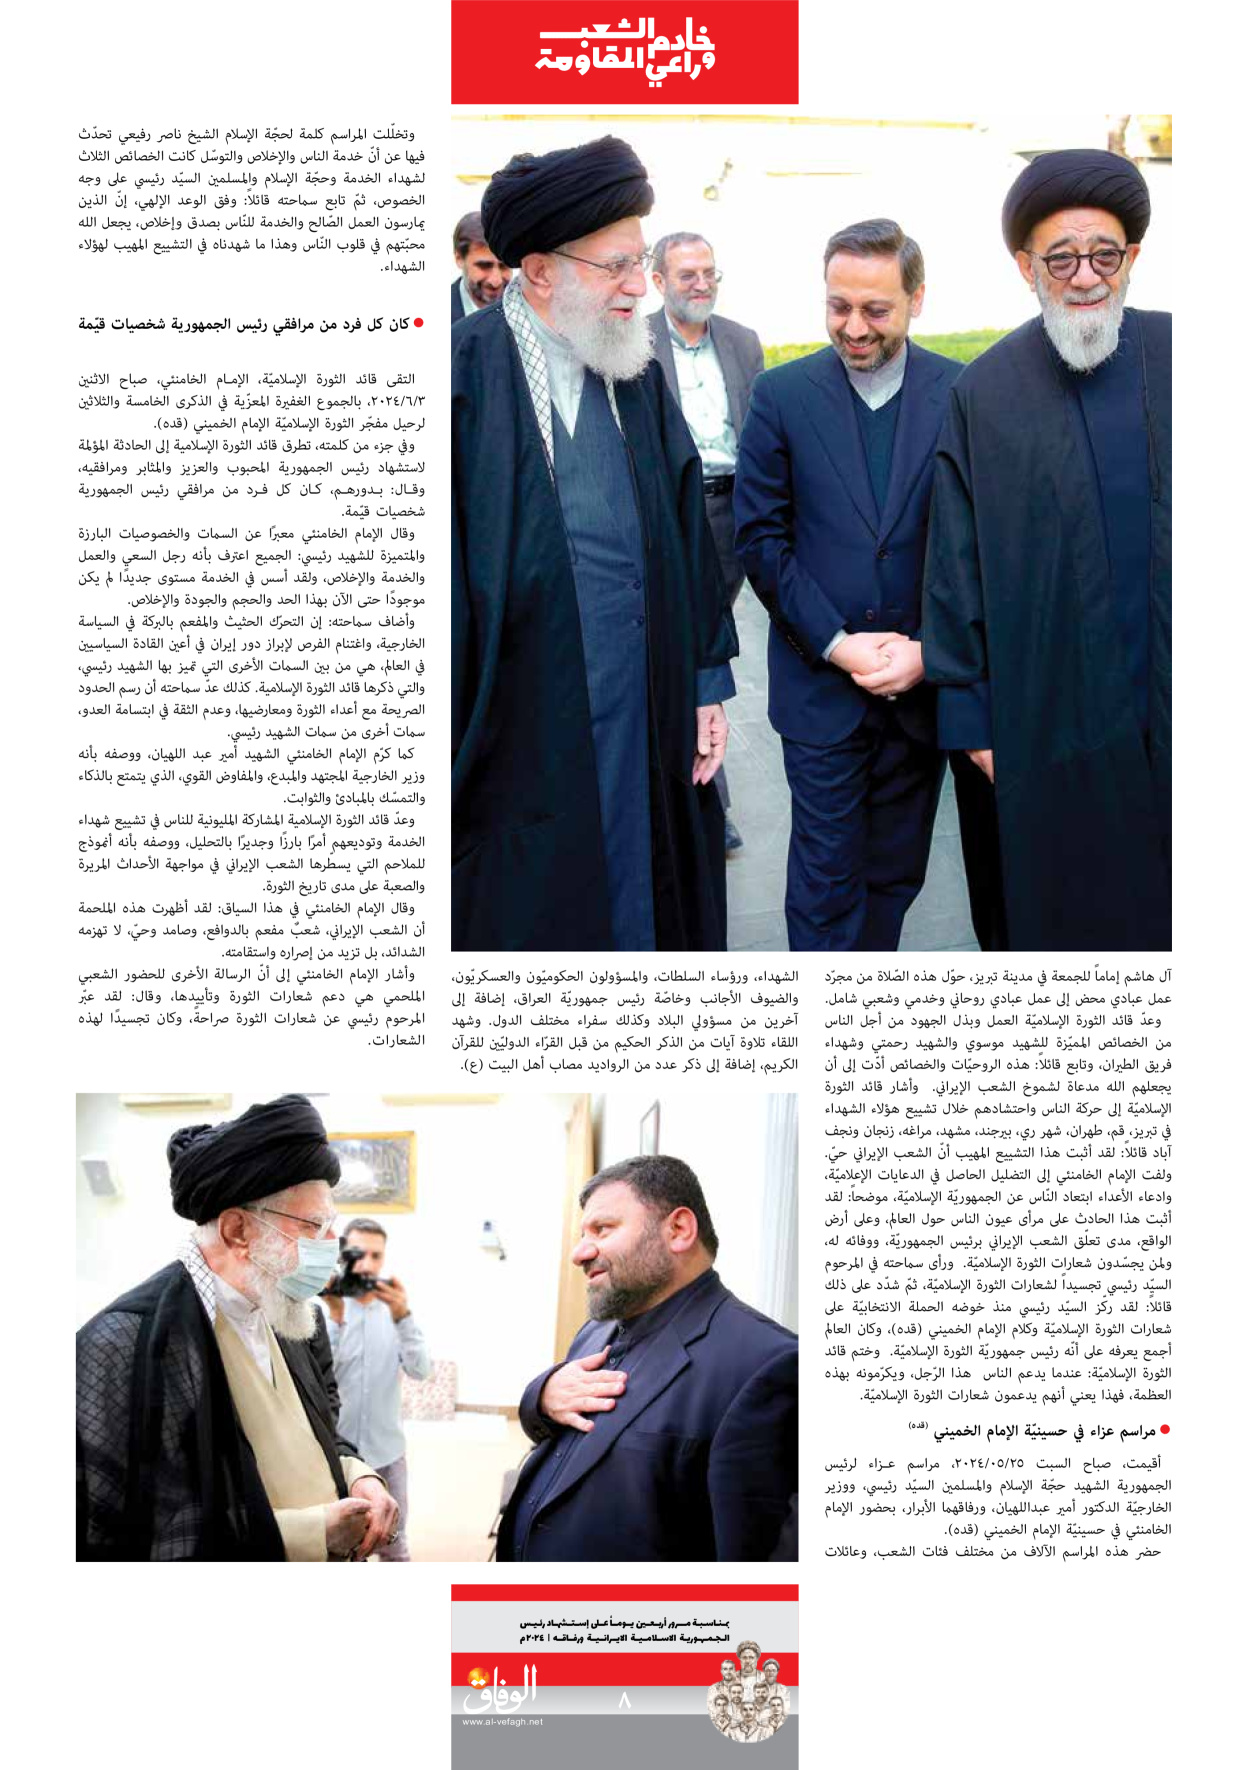 صحیفة ایران الدولیة الوفاق - ملحق ویژه نامه چهلم شهید رییسی - ٢٩ يونيو ٢٠٢٤ - الصفحة ۸